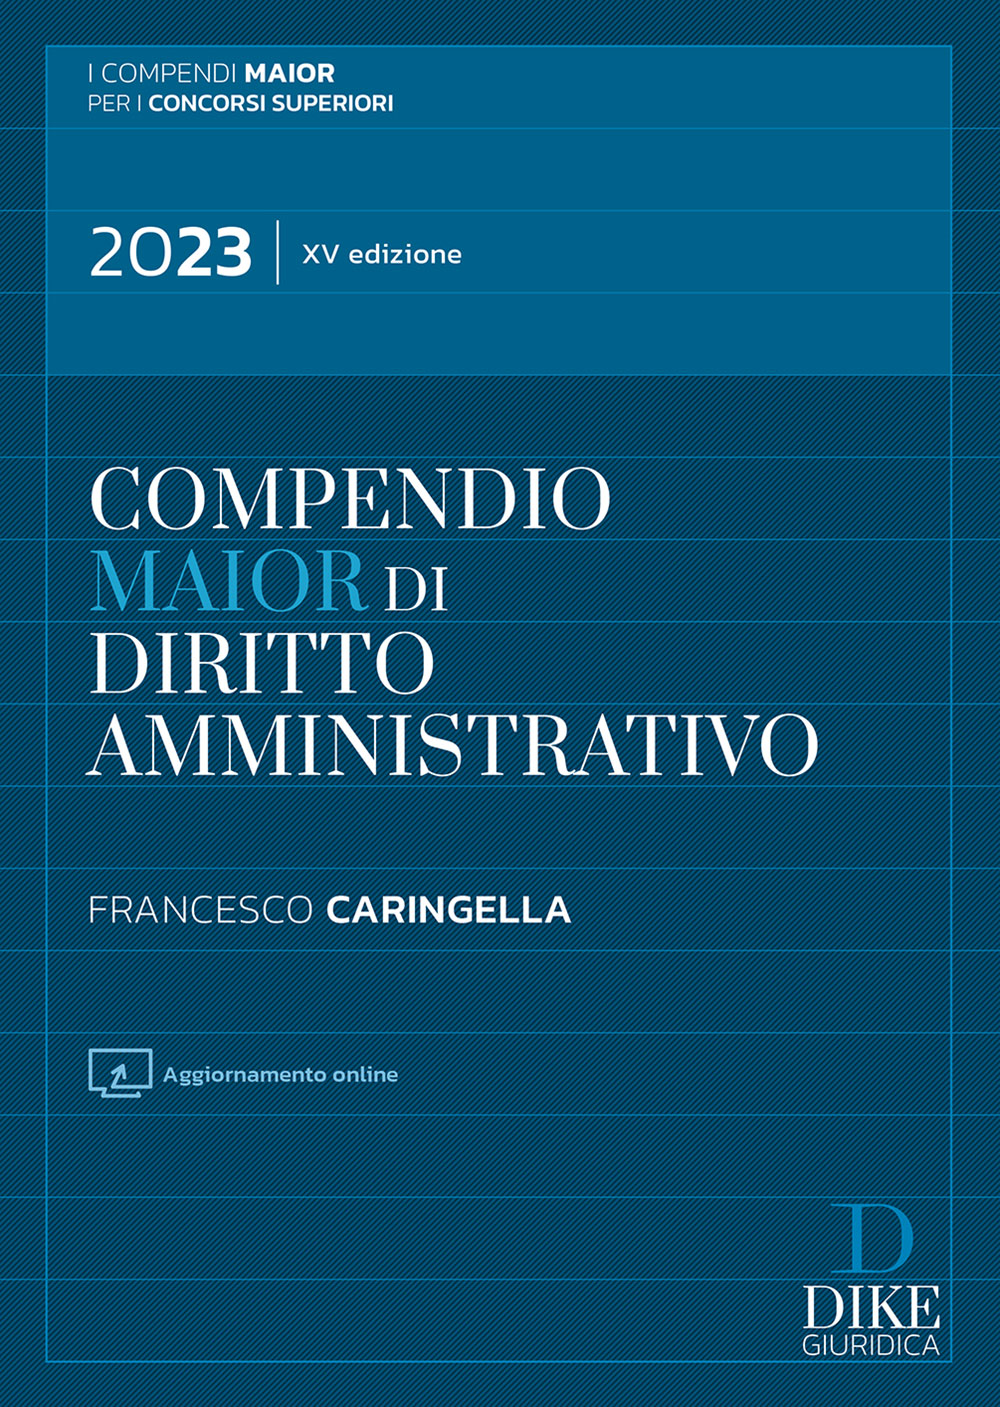 Compendio Diritto amministrativo 2023